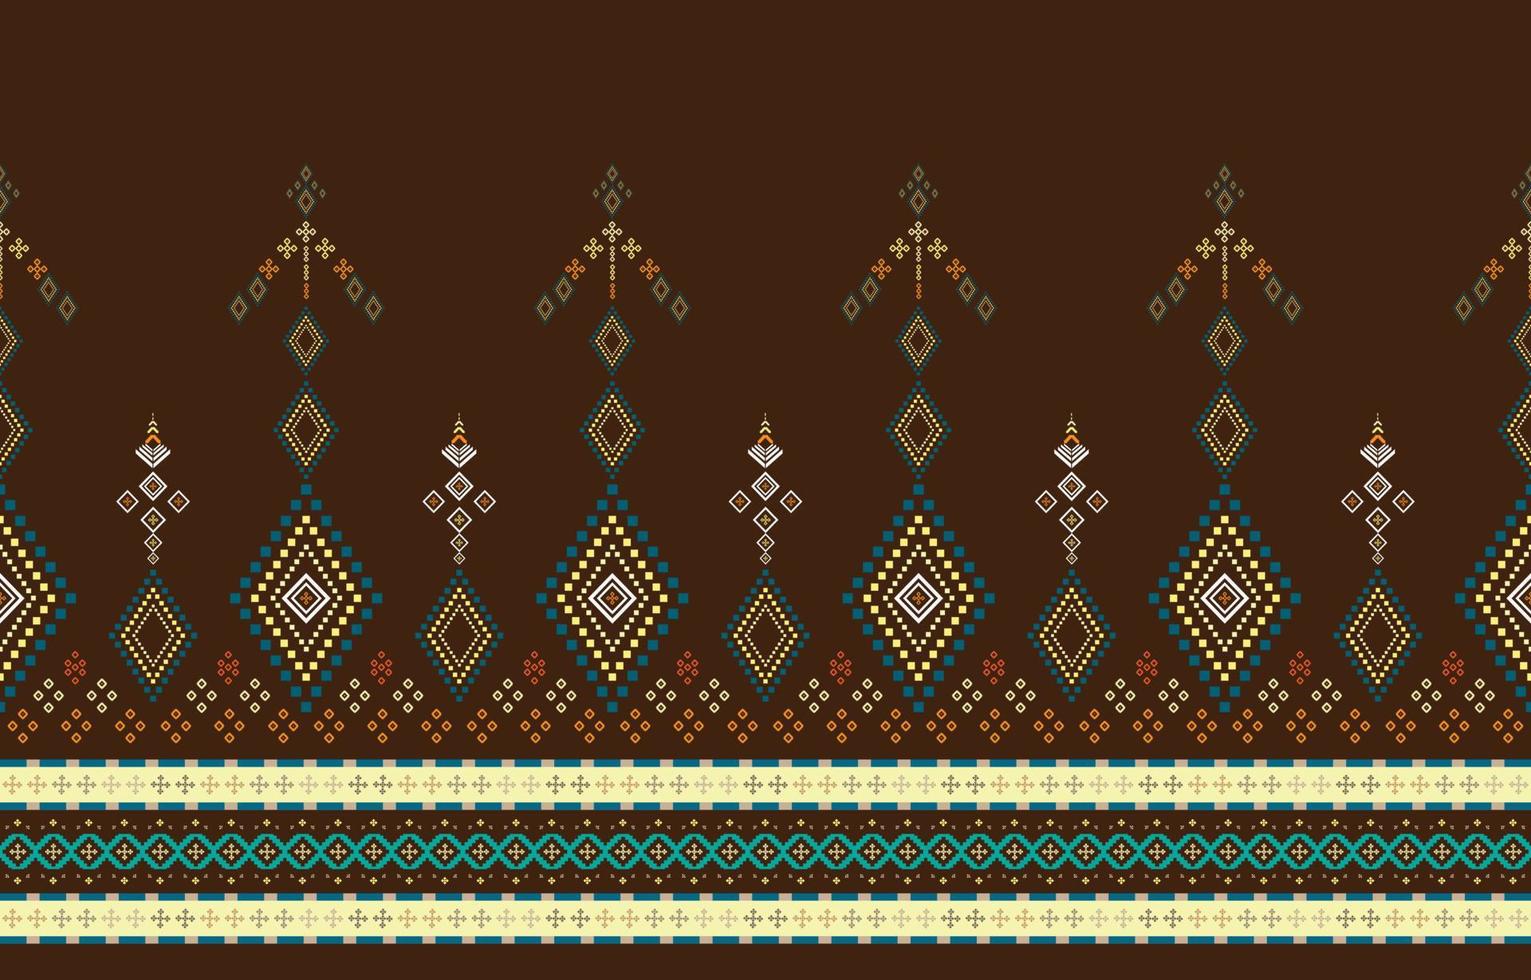 abstract meetkundig patroon, meetkundig etnisch oosters patroon traditioneel, ontwerp voor behang, stof, gordijn, tapijt, kleding, batik, inwikkeling, meetkundig vector illustratie, borduurwerk stijl.